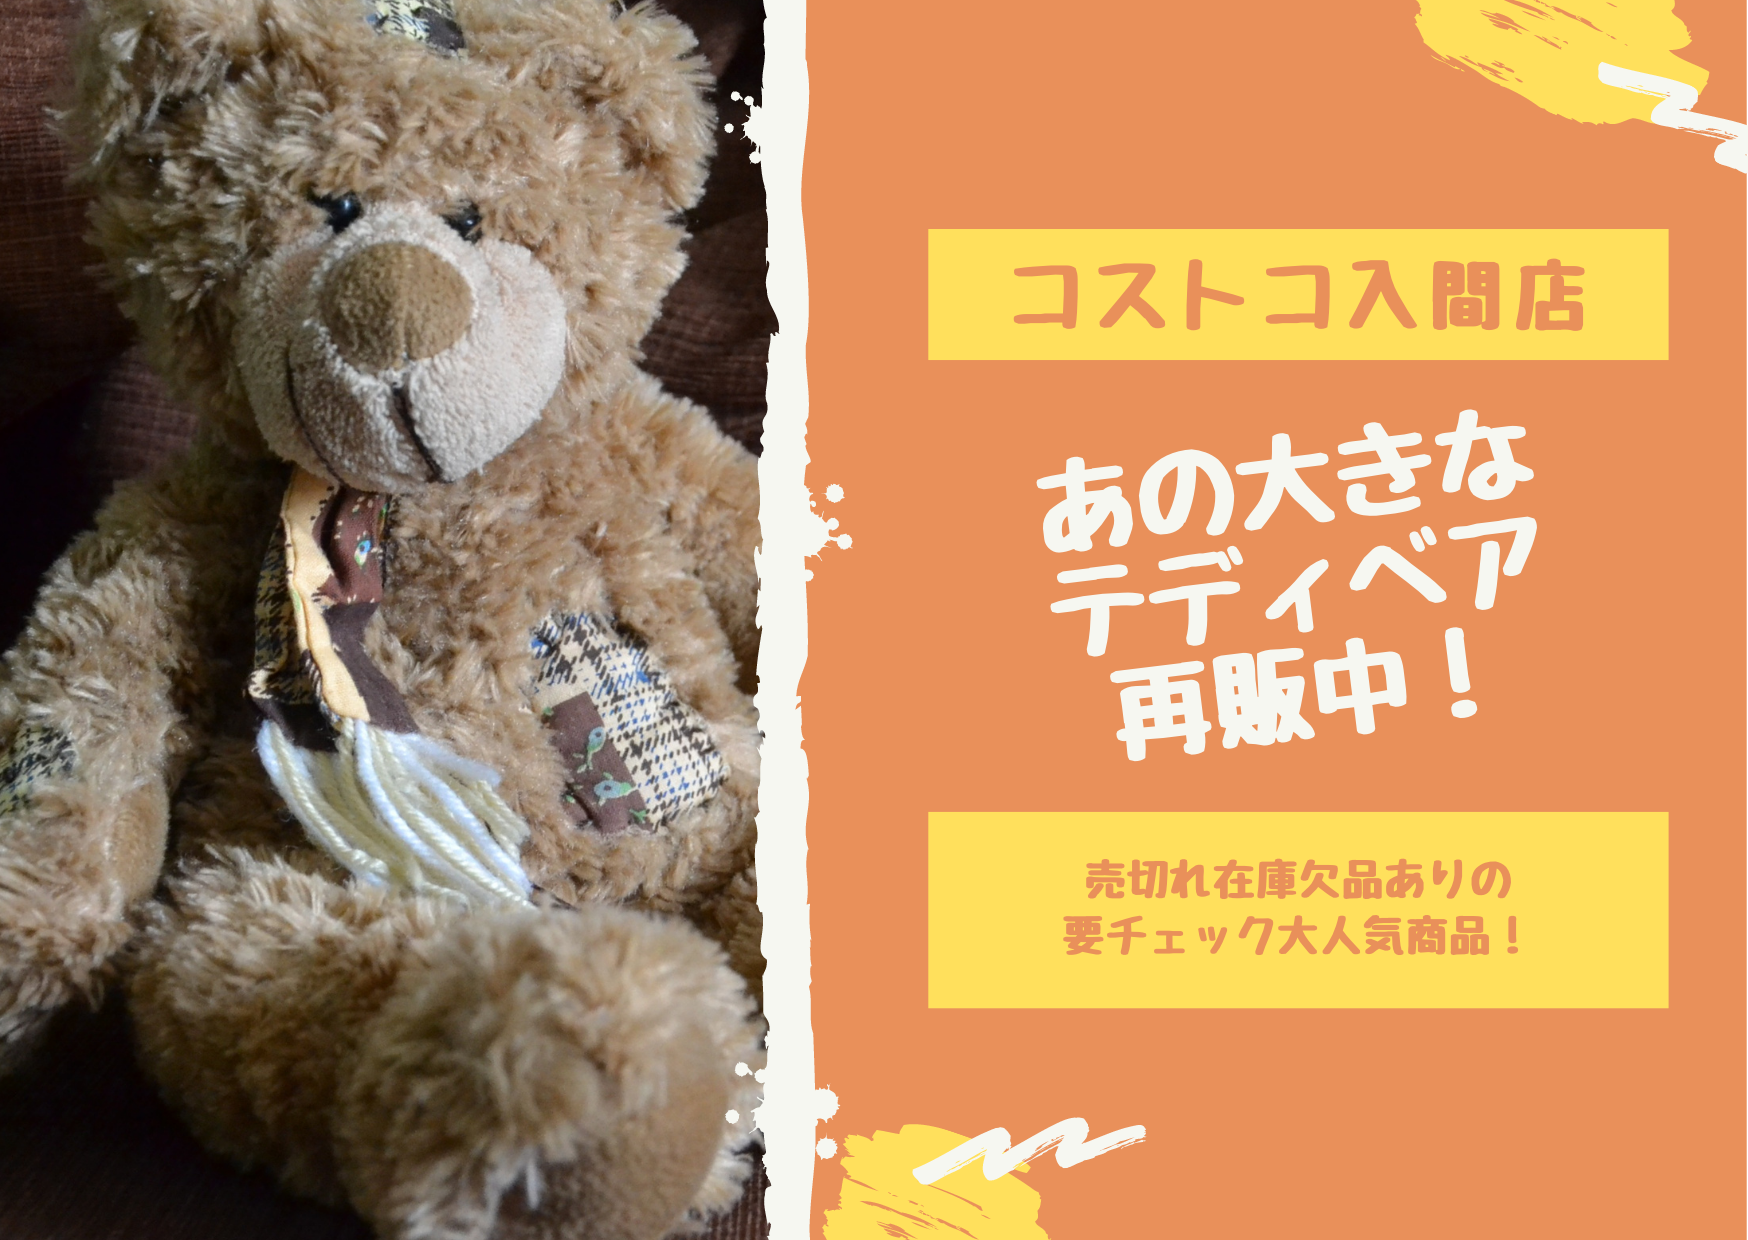 埼玉県 コストコ入間店 あのデカい熊が再販中 ショーンの品質保証ブログ